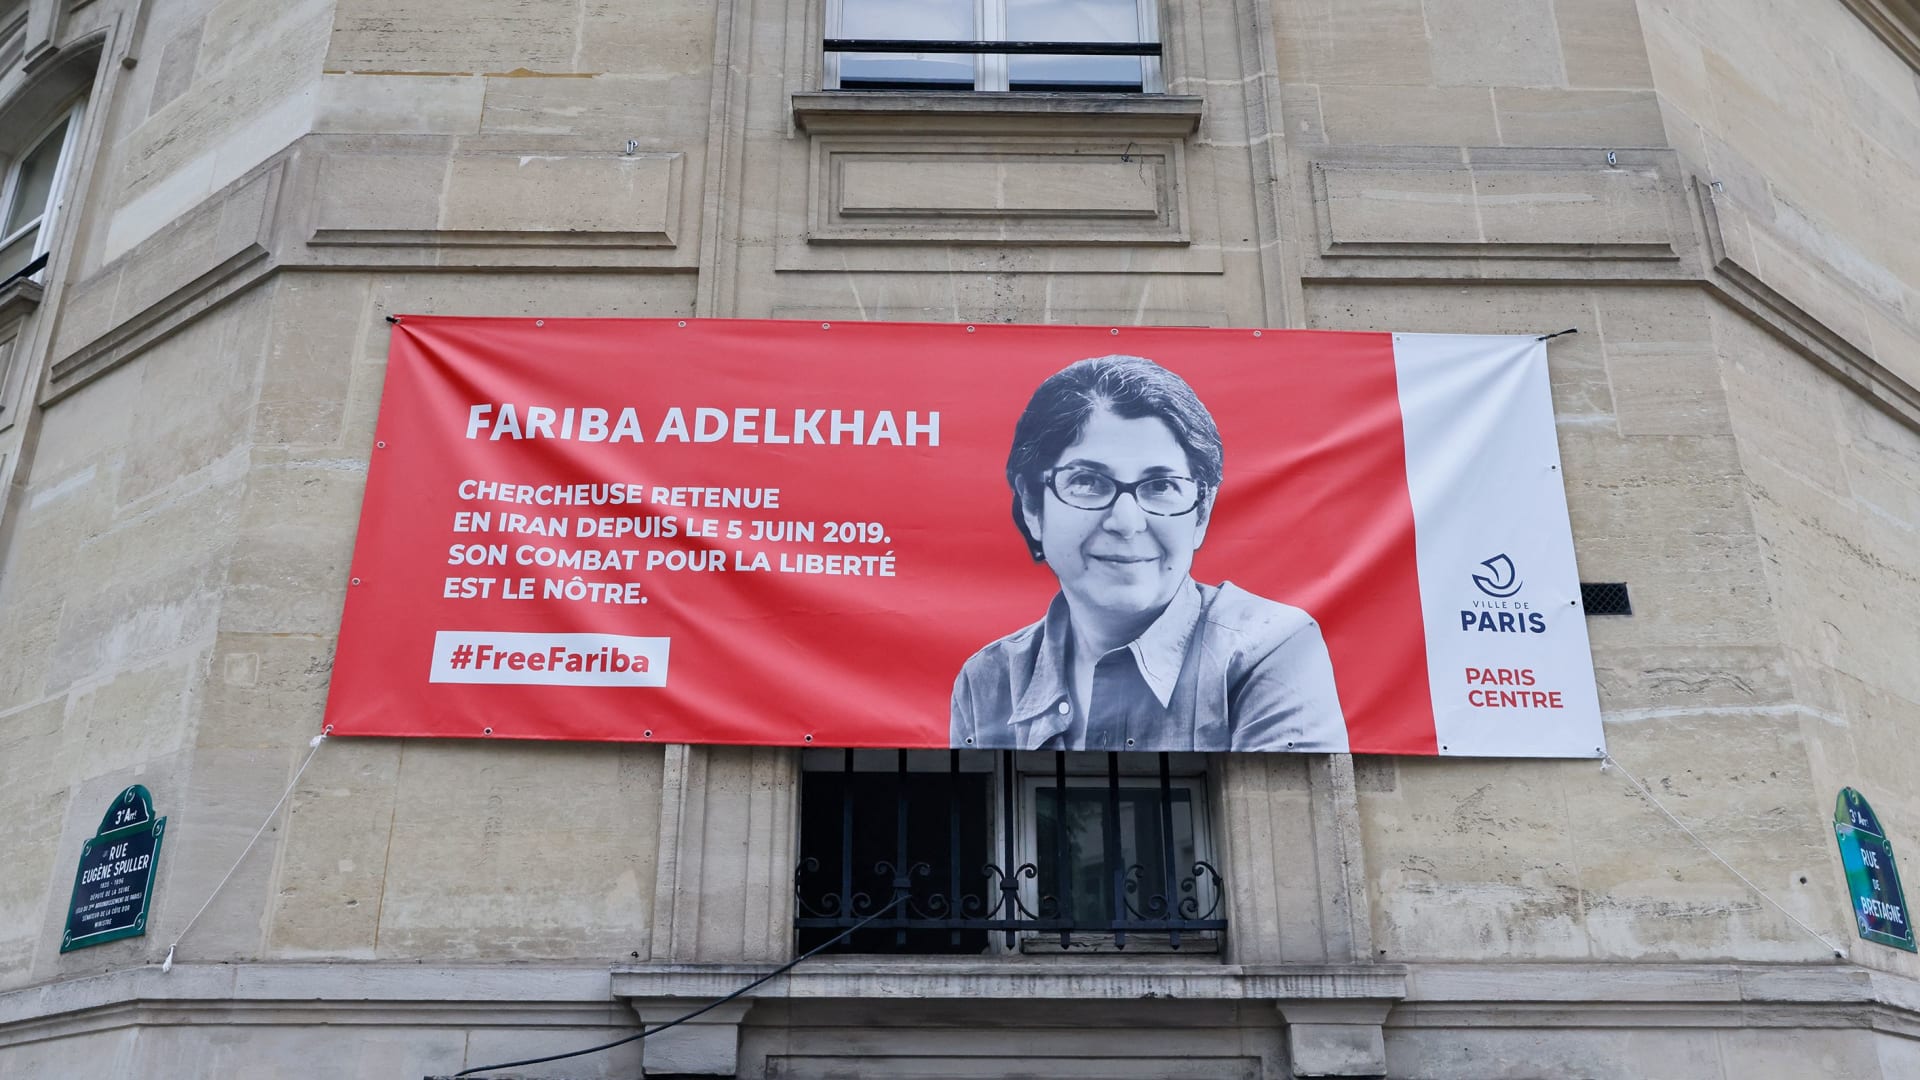 لافتة تحمل صورة فاريبا عادلخاه خلال مظاهرة في باريس تطالب إيران بالإفراج عنها (صورة أرشيفية)